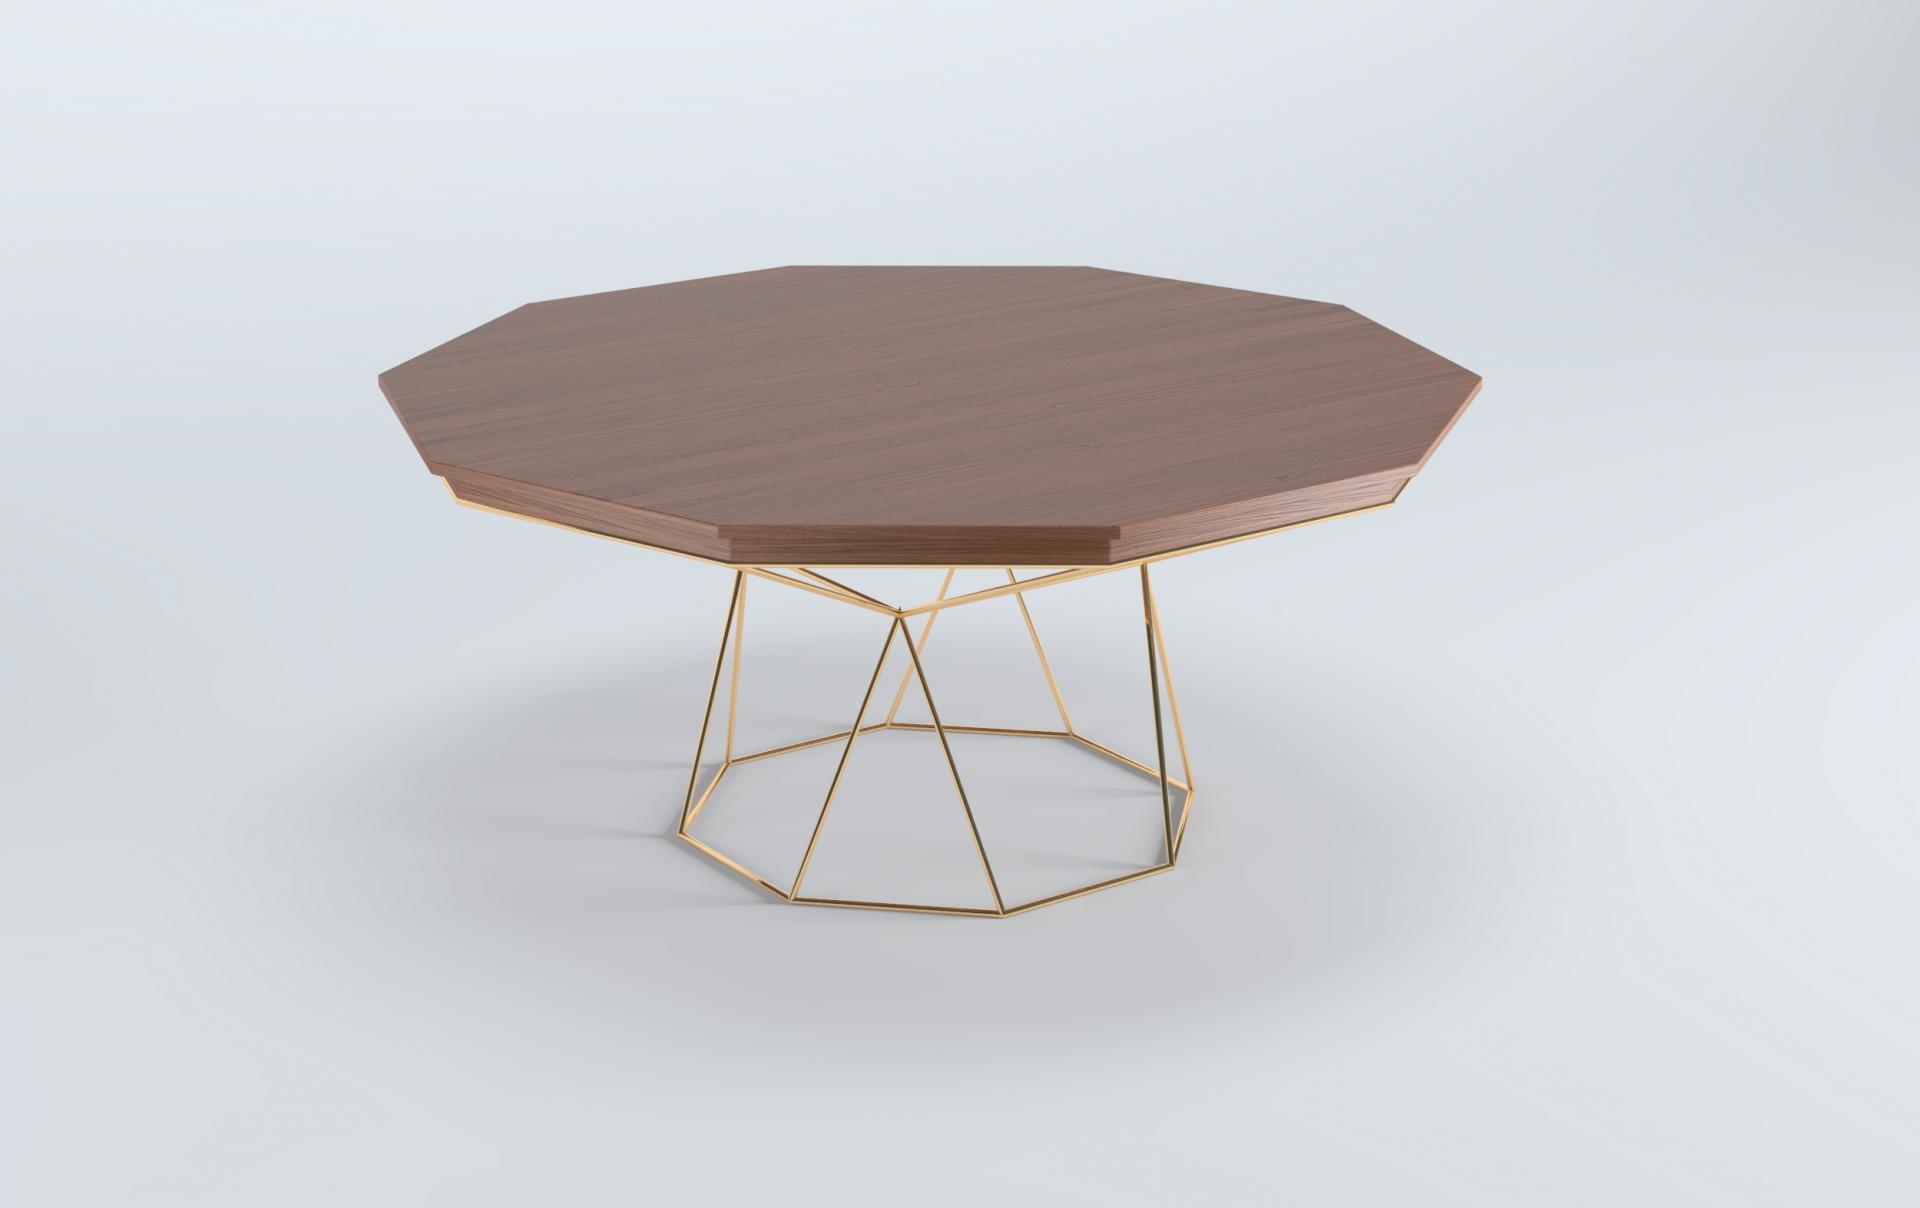 Mesa para café octagonal